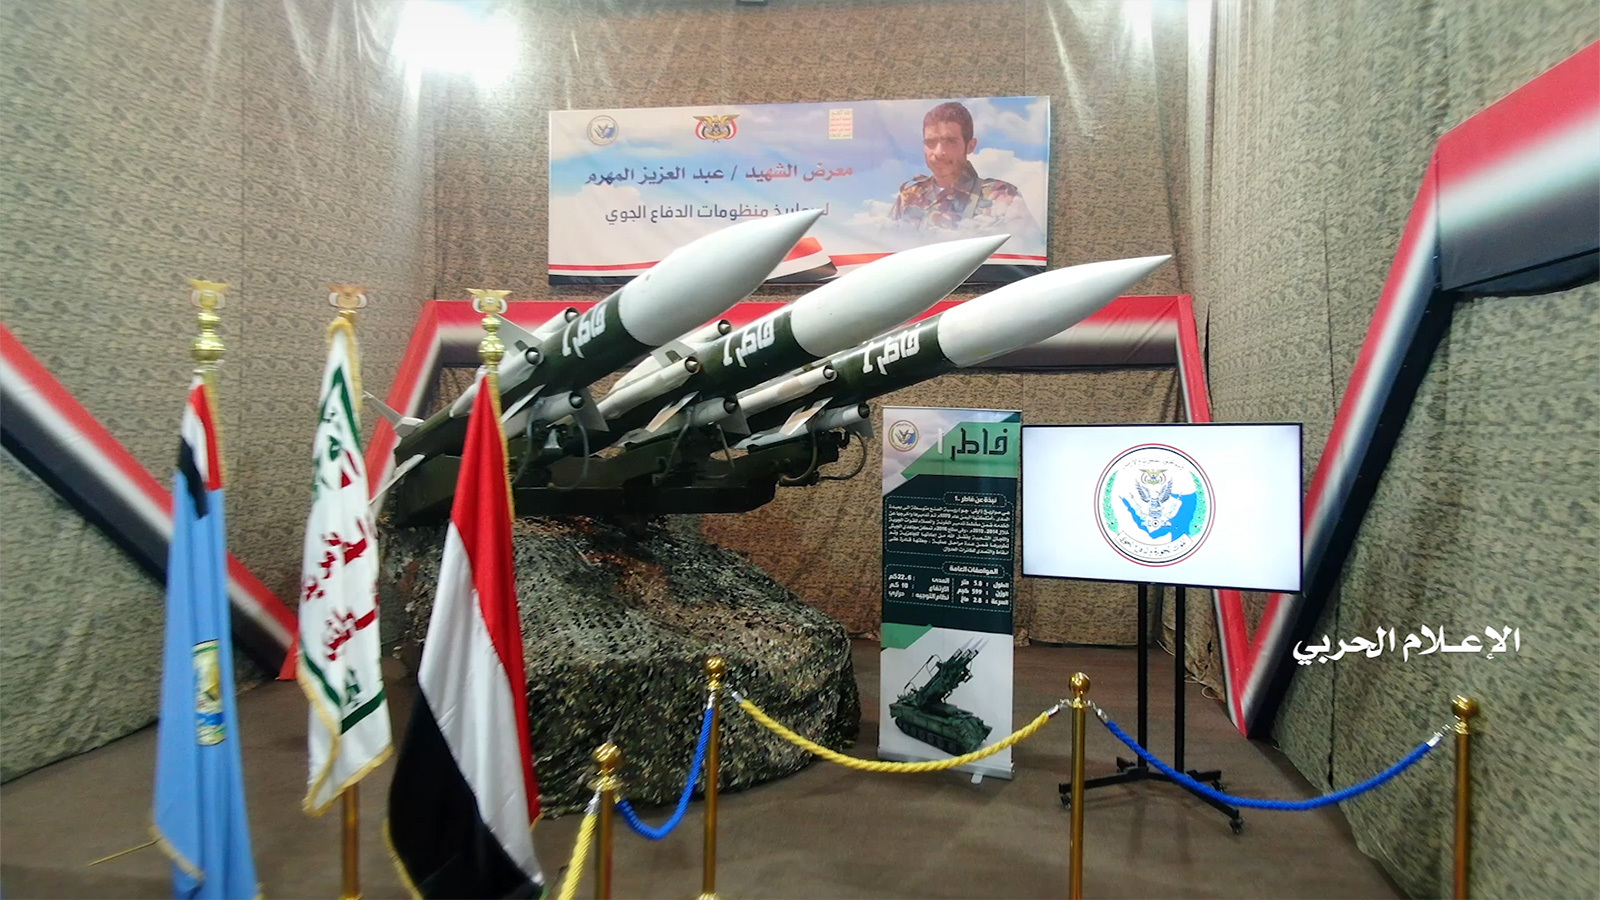 إزاحة الستار عن أربع منظومات دفاعية جديدة.. هل ستغيّر هذه المنظومات مسار المعركة على الساحة اليمنية ؟+ صور